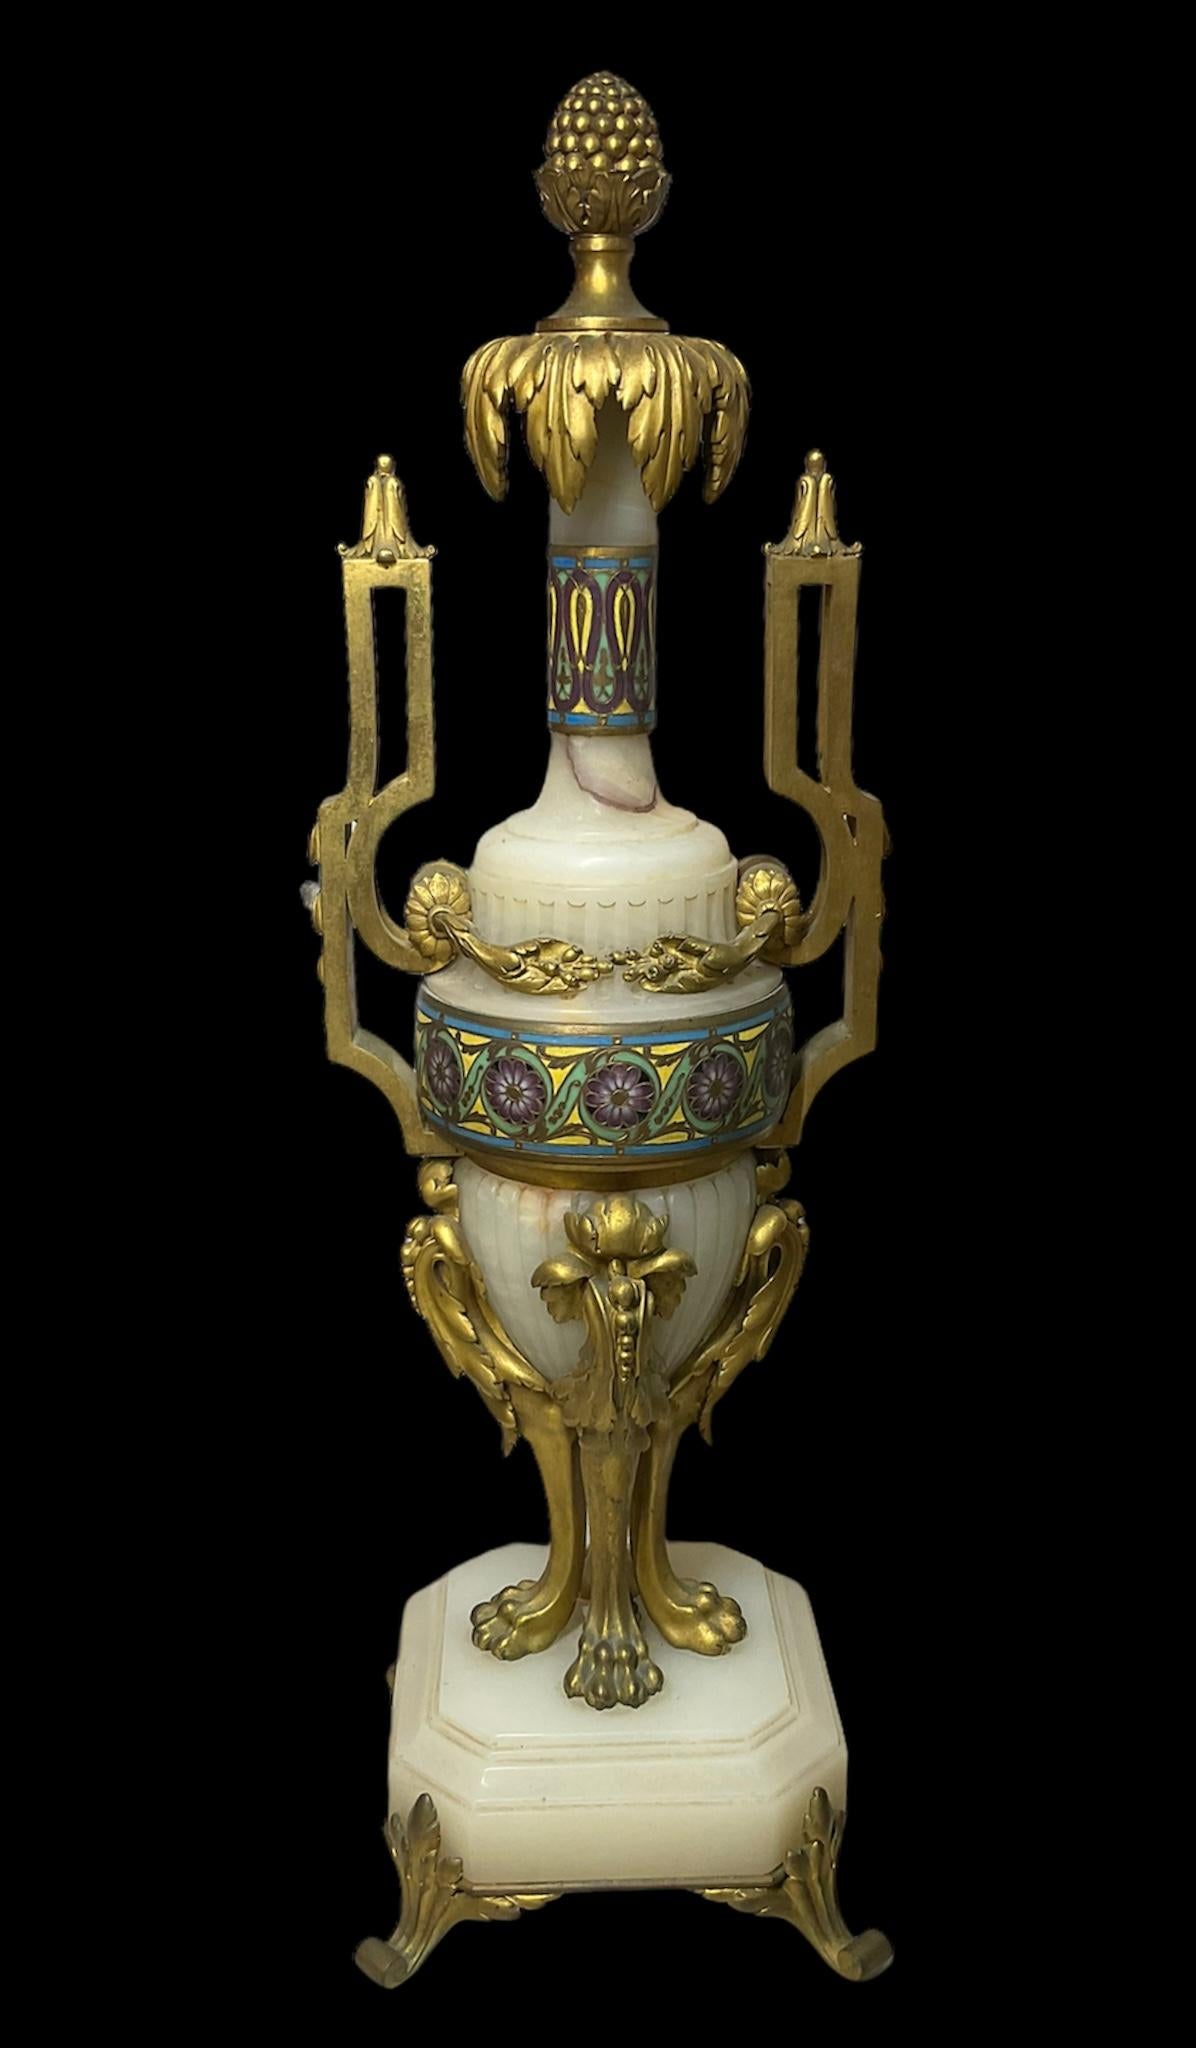 Es handelt sich um ein Set von Ferdinand Barbedienne mit vergoldeter Bronze und Onyx-Garnituren. Es besteht aus zwei Urnen und einer großen ovalen Vase/Jardiniere. Die Vase ist am Rand mit einer Kette aus vergoldeten Perlen geschmückt, und aus den